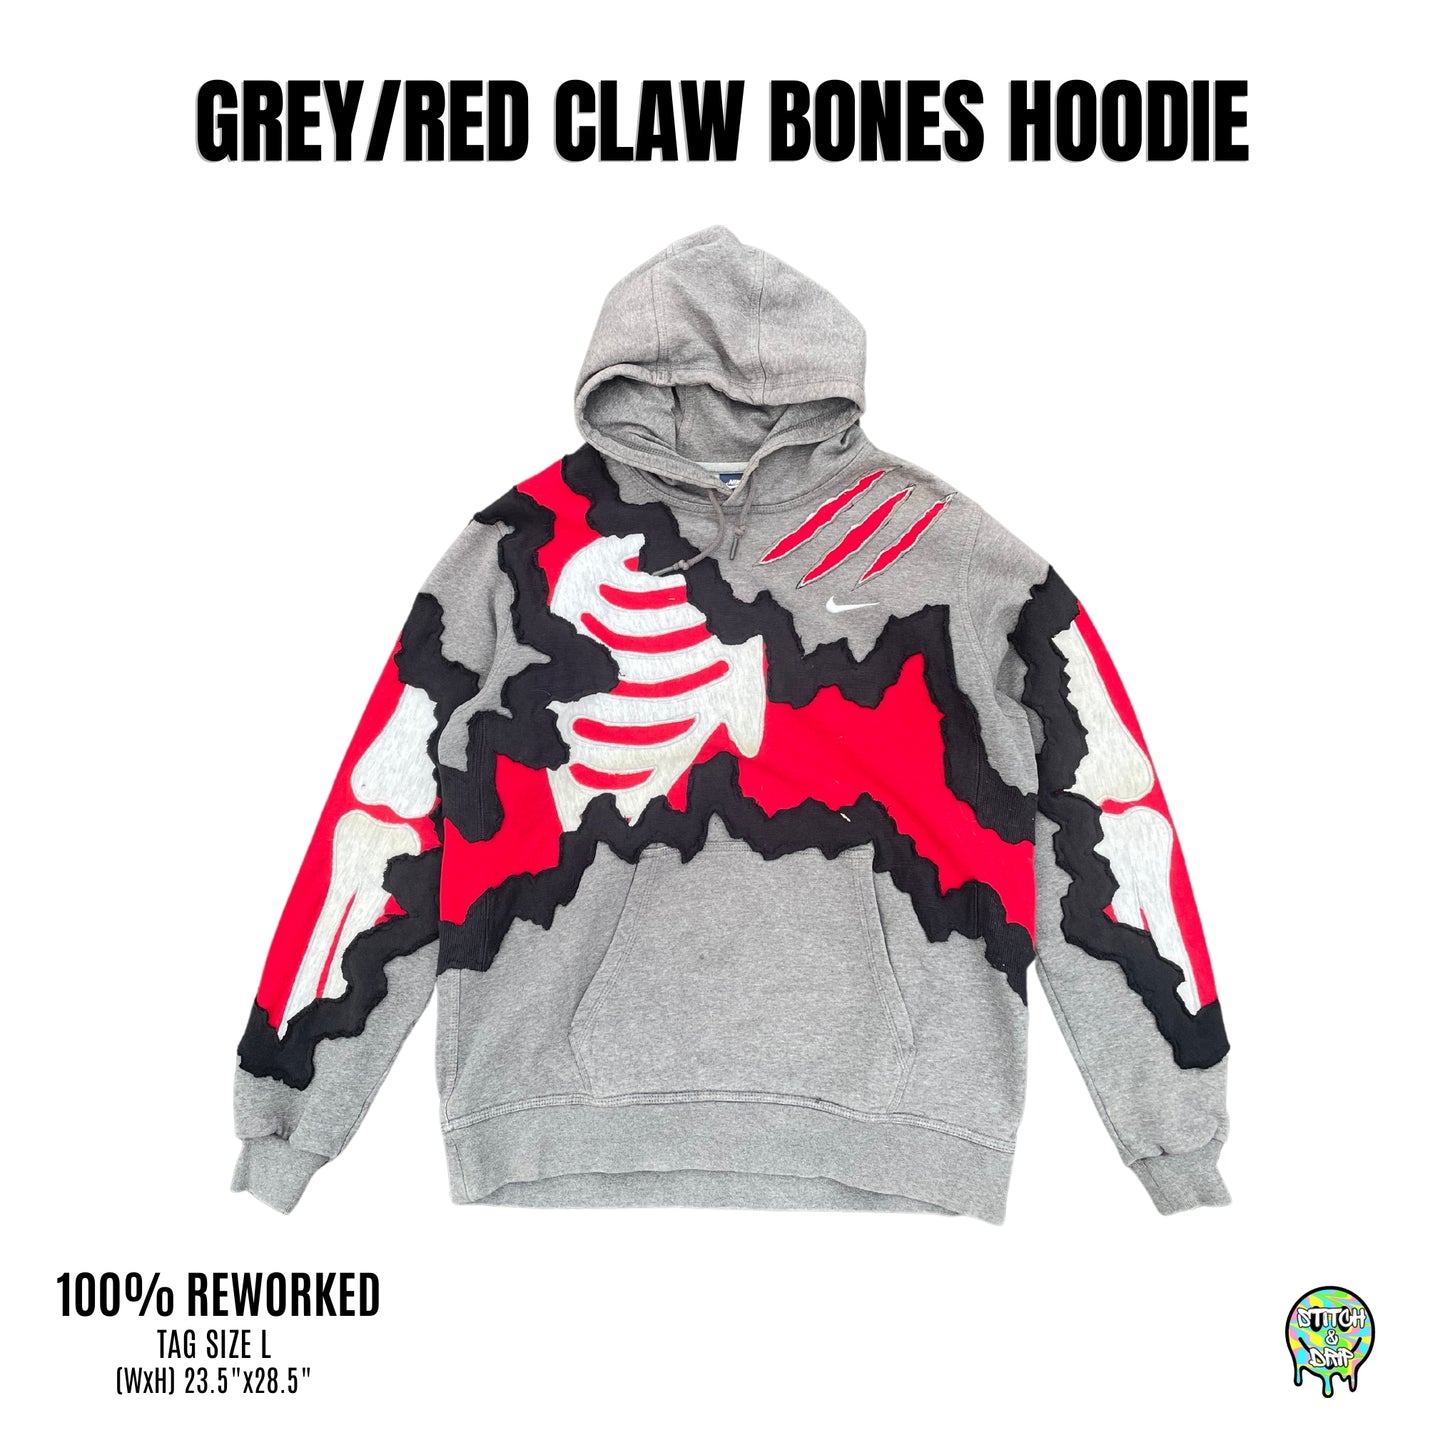 Grey/Red Claw Bones Hoodie (L)